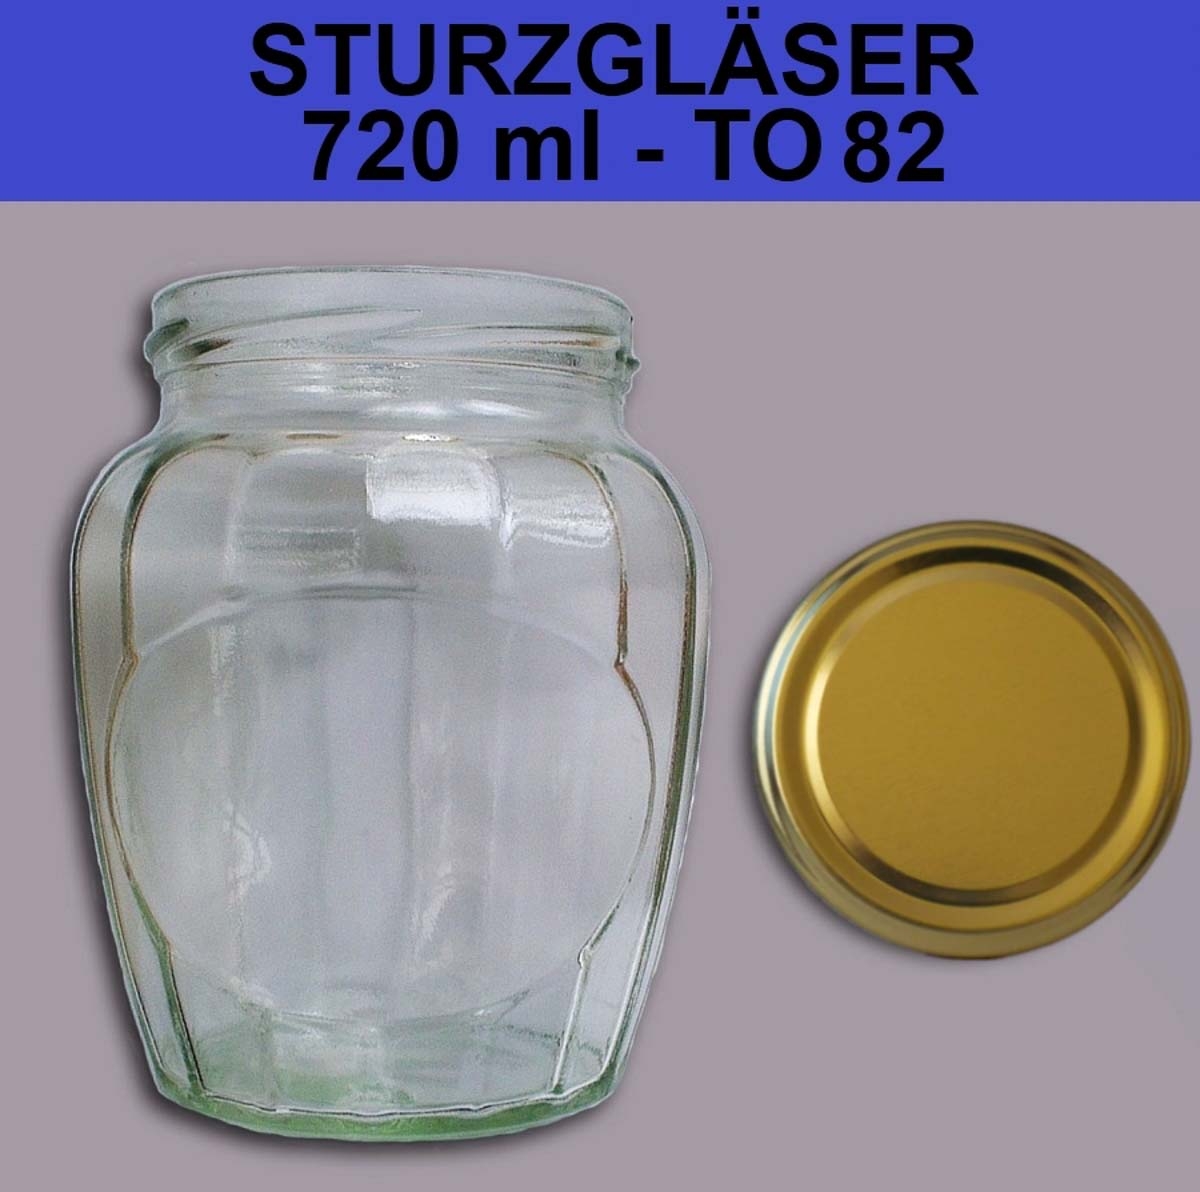 32 Stück X 720 ml Einmachgläser • Einkochgläser mit Schraubdeckel TO 82 mm Gold 